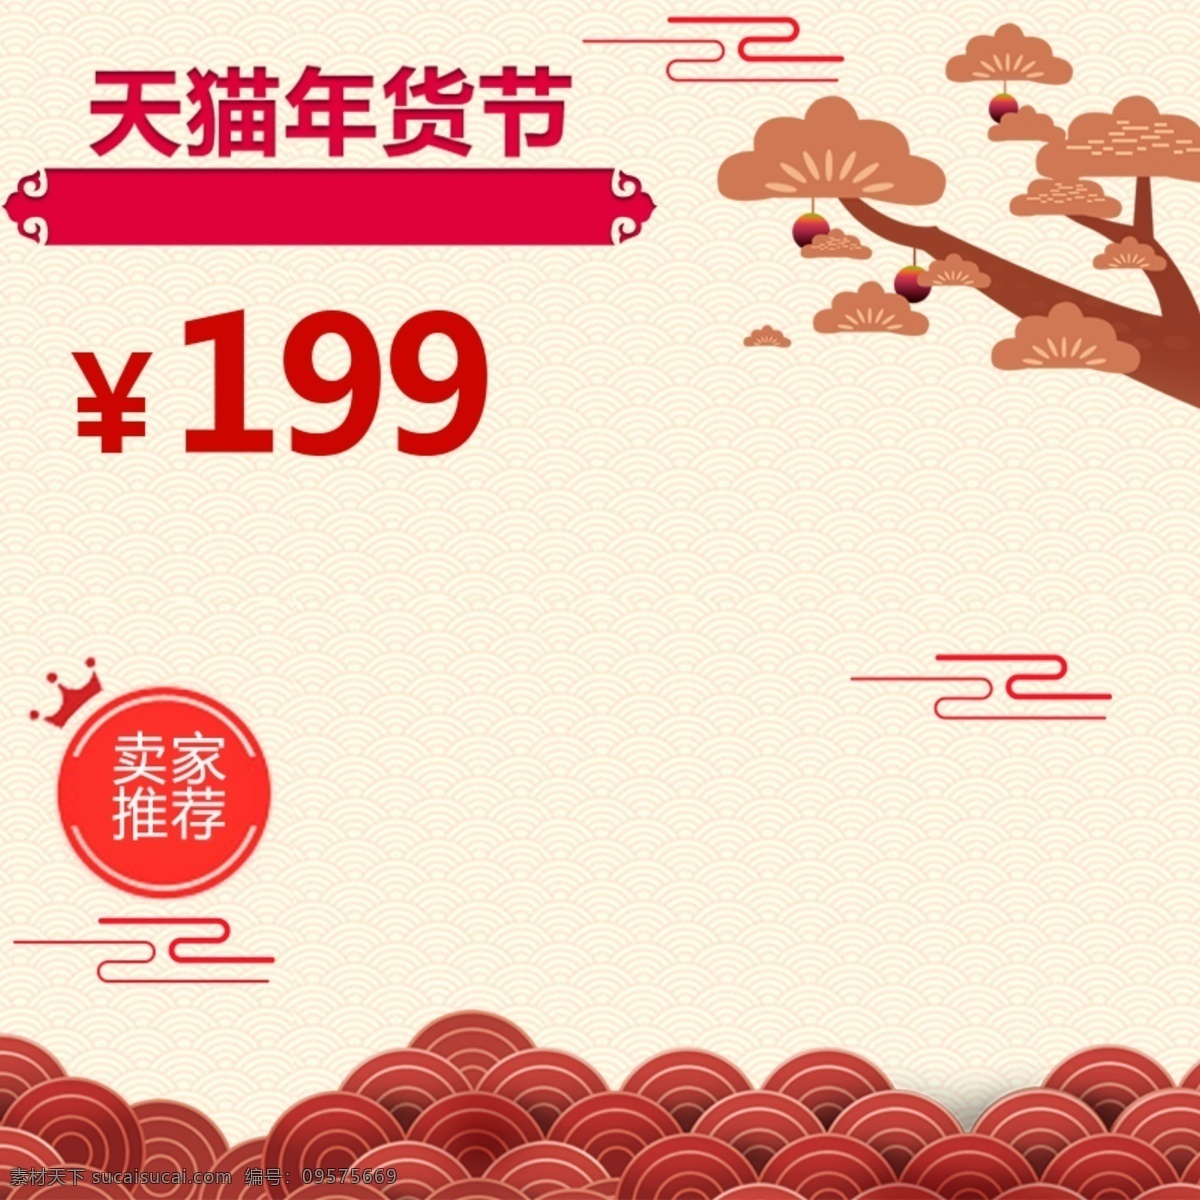 淘宝 天猫 年货 节 零食 促销 主 图 喜庆 红色 福字 年货节 活动